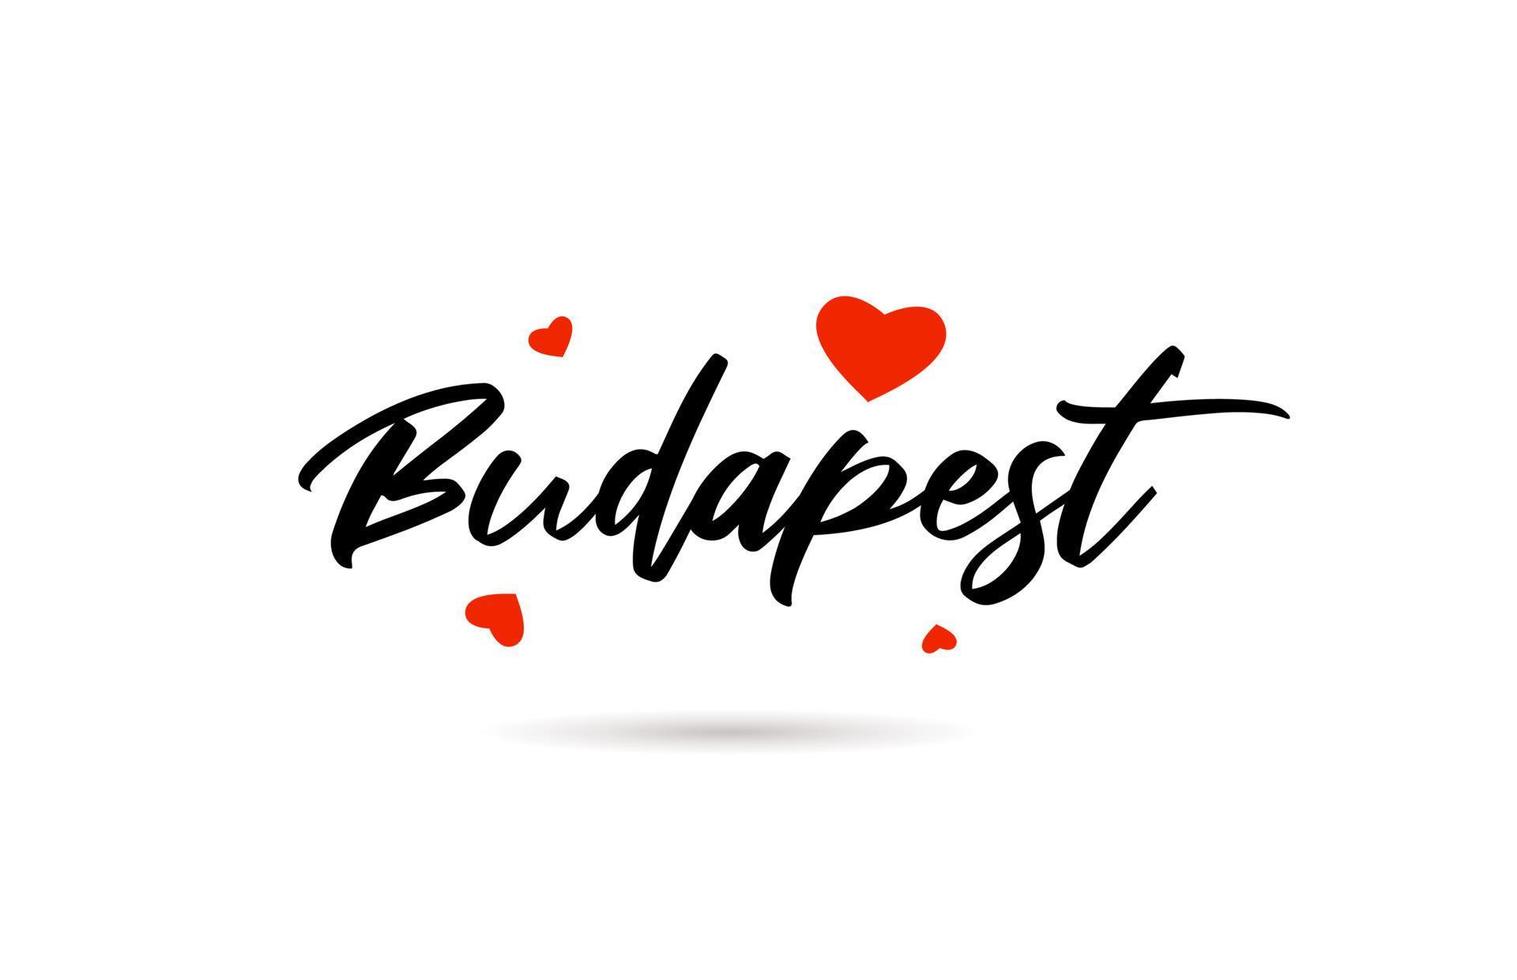 Budapest manuscrit ville typographie texte avec l'amour cœur vecteur